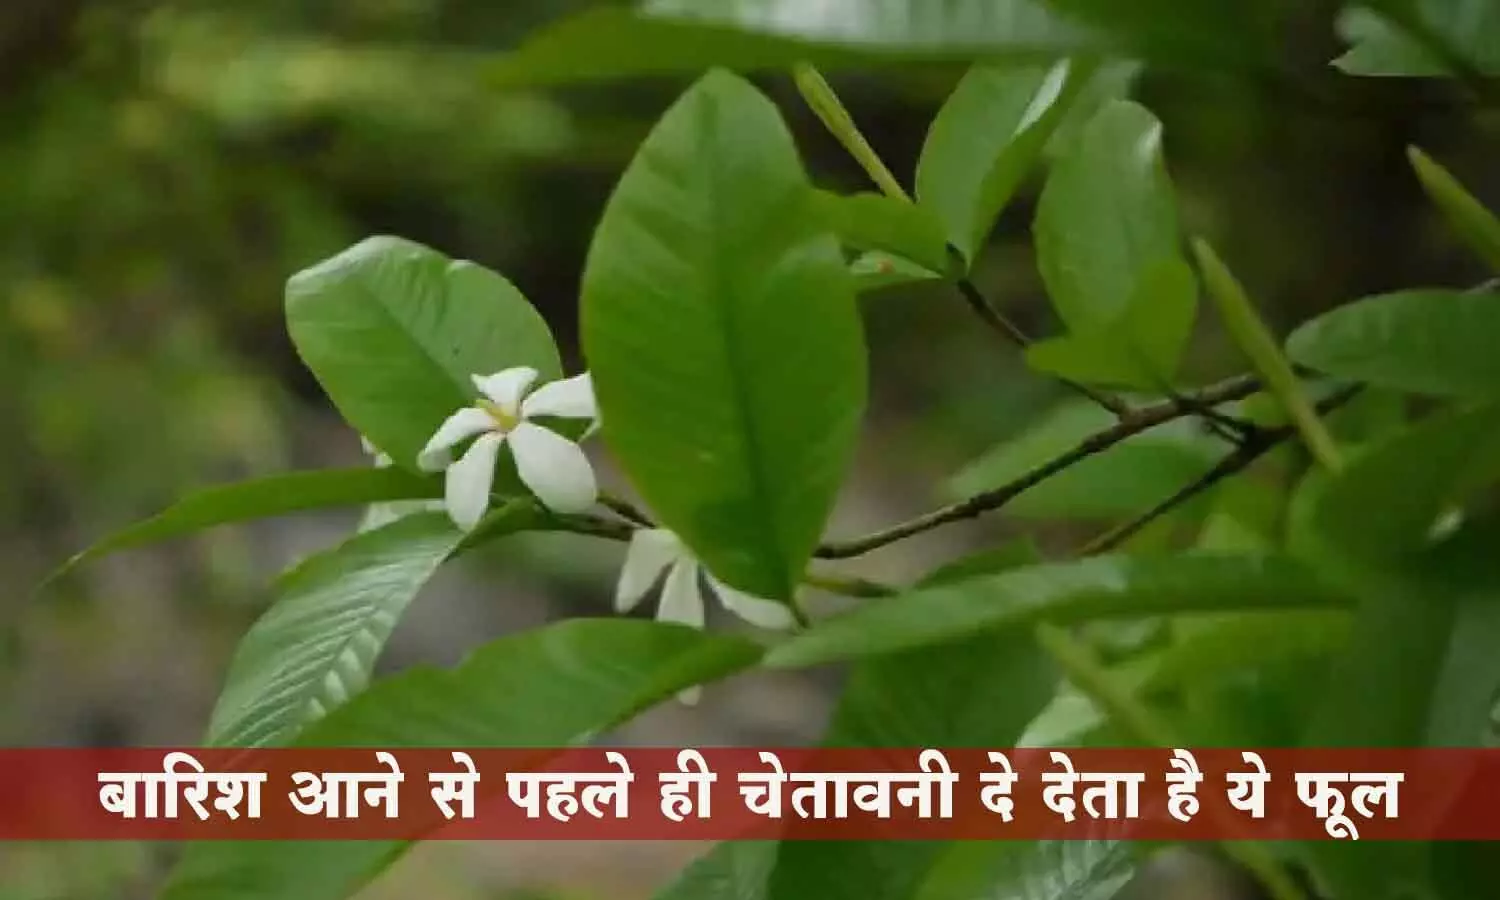 Dikamali Flowers Chhattisgarh: छत्तीसगढ़ के जंगल में खिला है ऐसा फूल, जो बारिश होने के पहले ही दे देता है चेतावनी